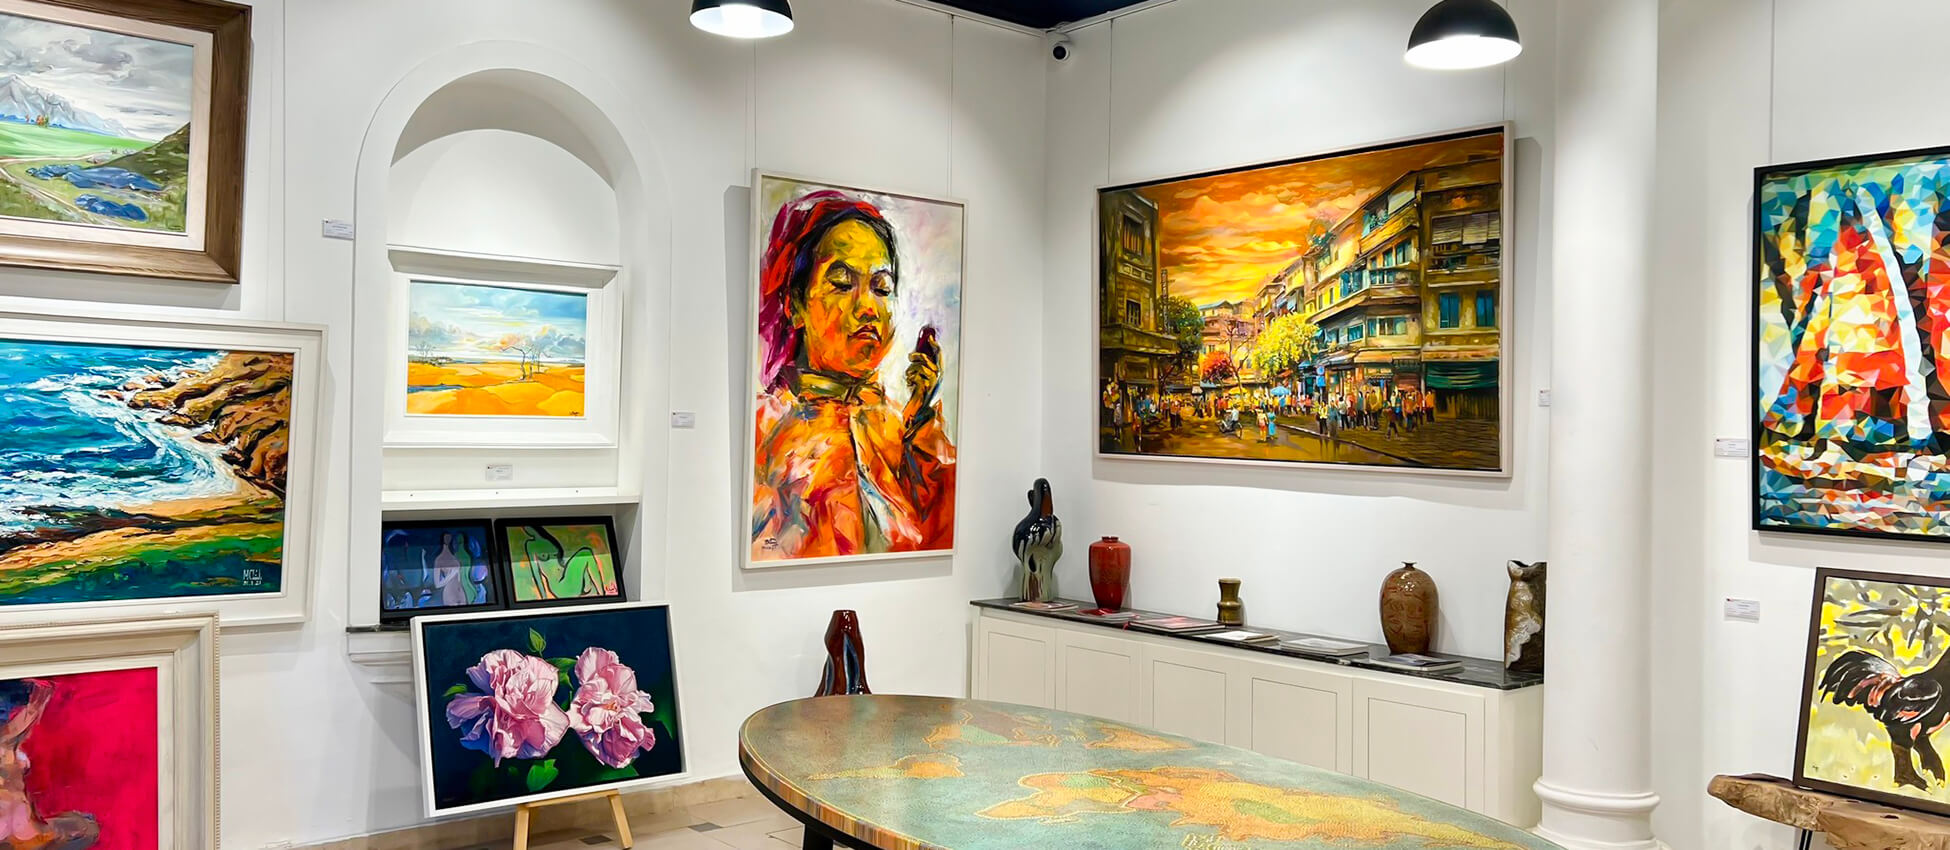 Nguyen Art Gallery - Vietnam Artworks and Paintings